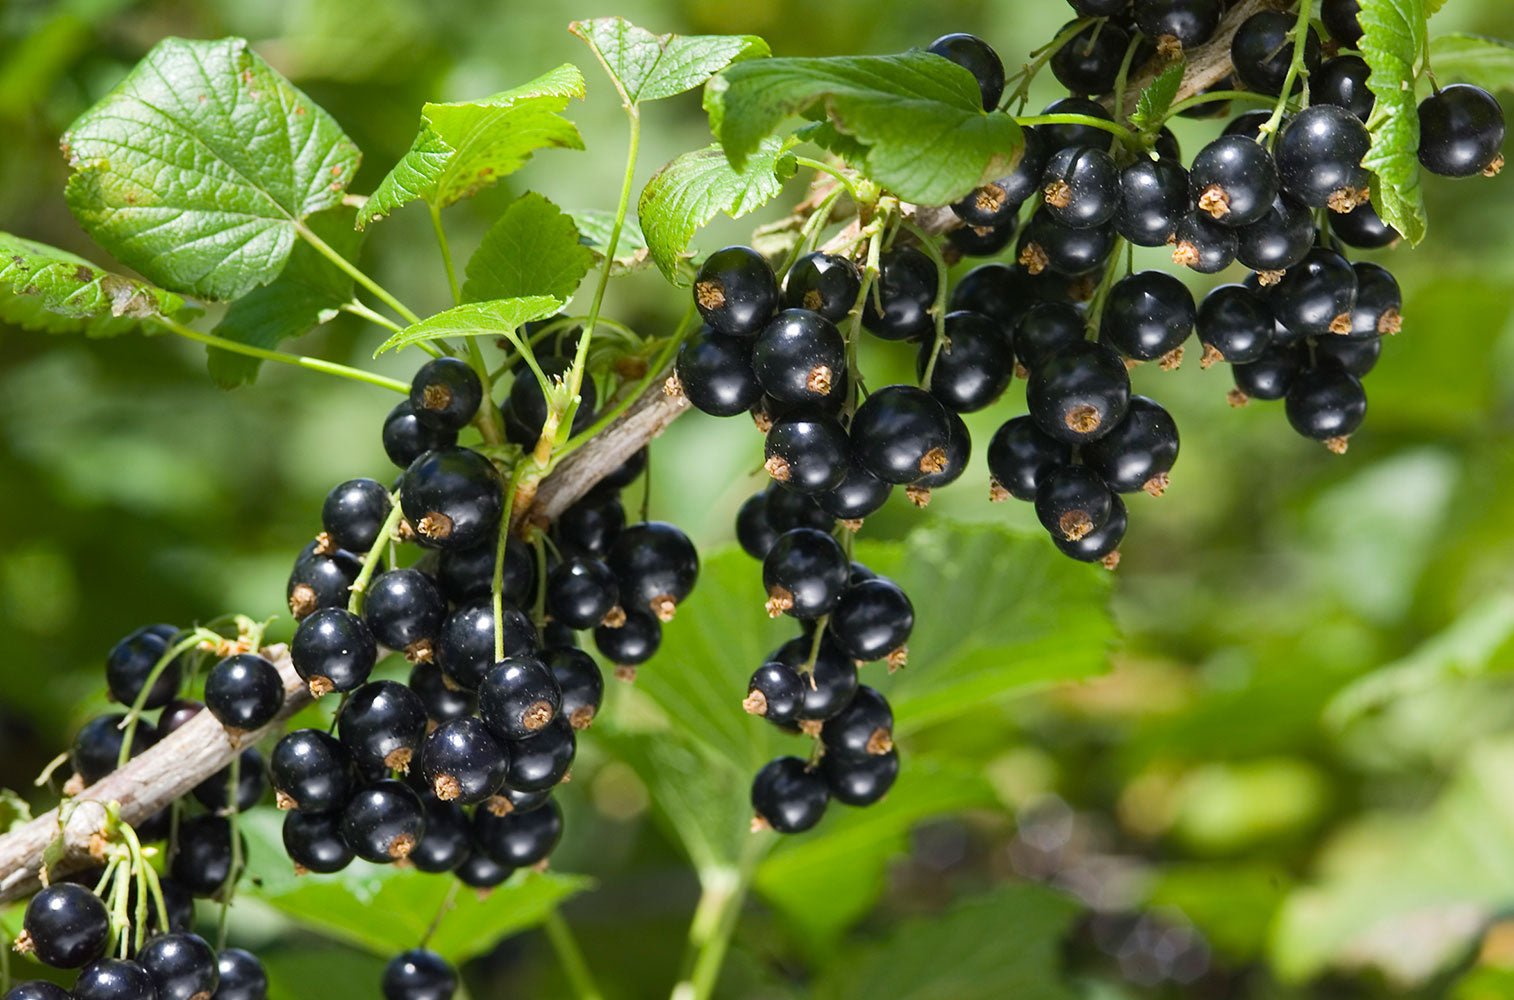 New Zealand blackcurrant berries